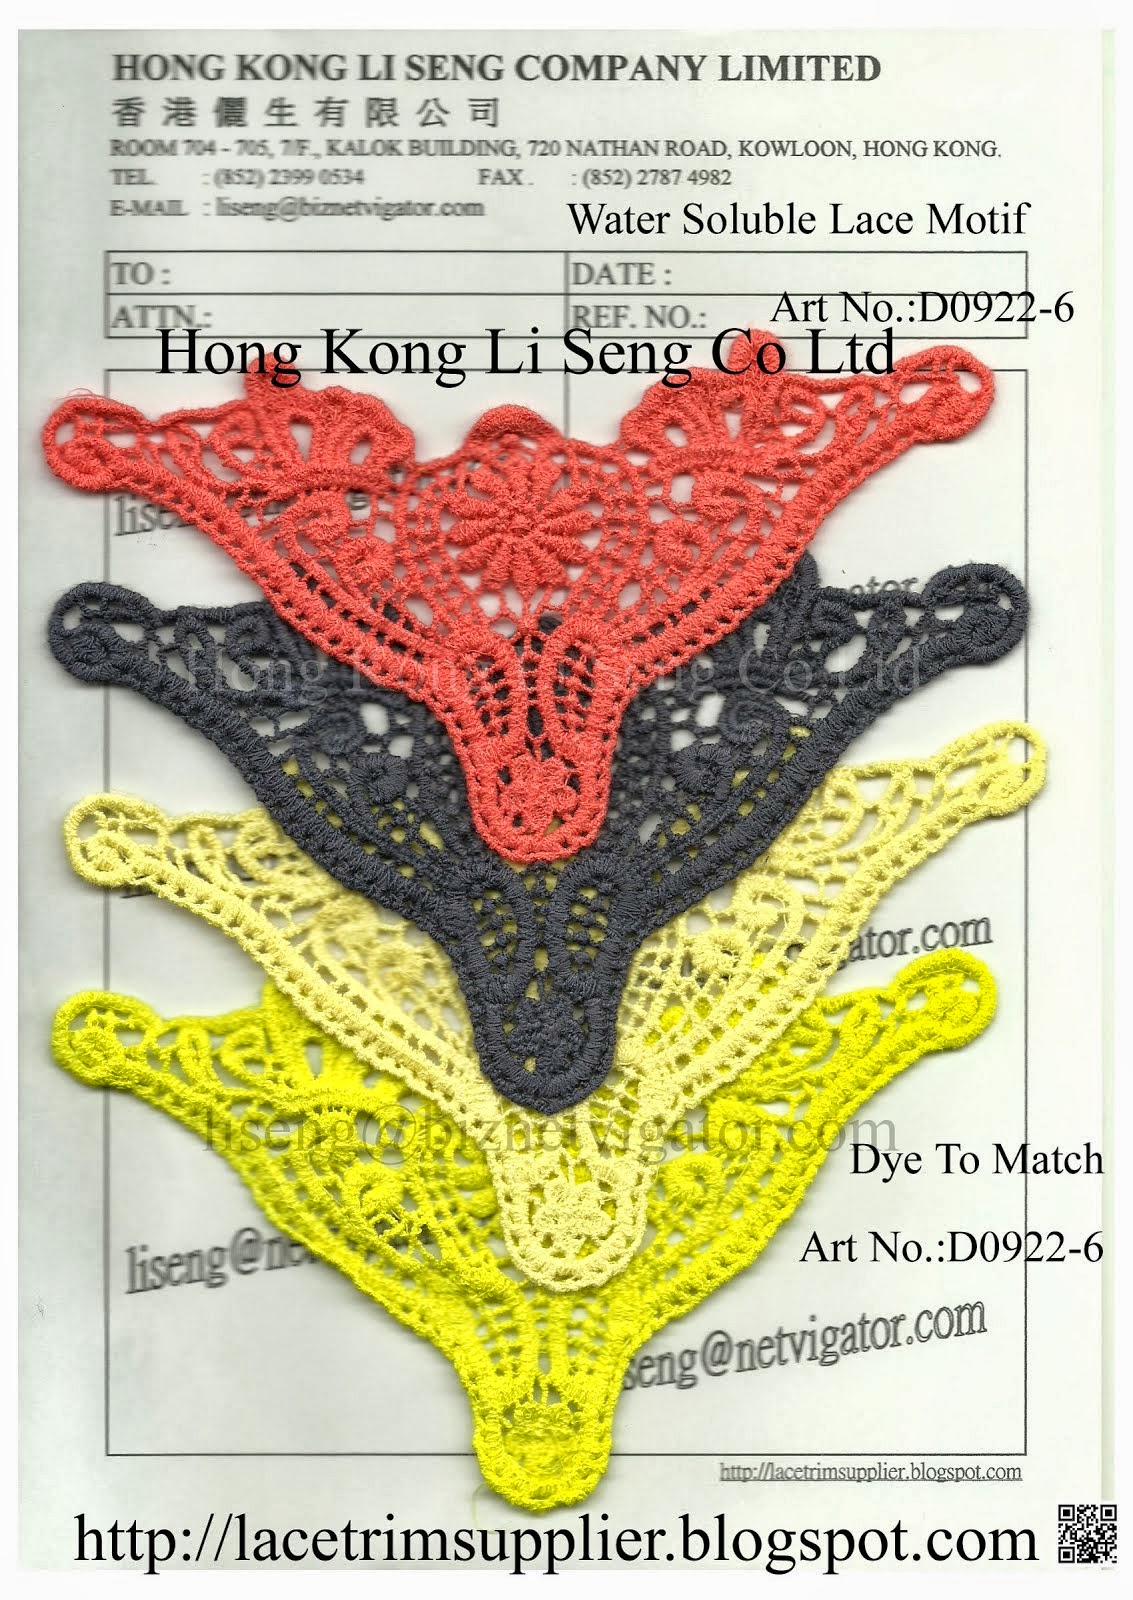 Dye to Match - Water Soluble Lace Motif Manufacturer - Hong Kong Li Seng Co Ltd